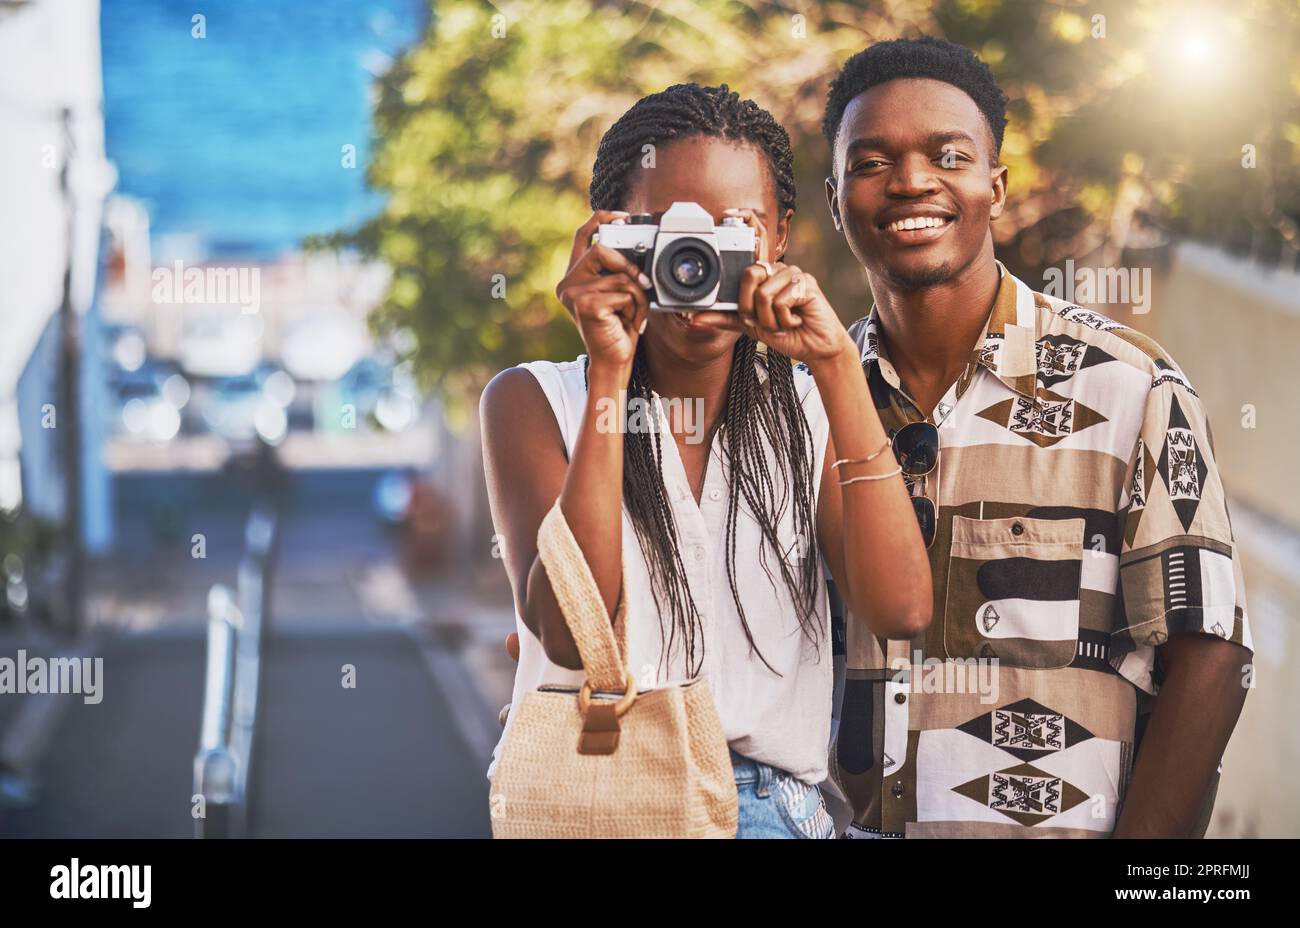 Viaggi, turismo e giovani coppie nere che scattano foto con una macchina fotografica, si divertono e camminano in città. Fidanzato afro-americano e fidanzata che si godono la loro relazione e il loro viaggio insieme Foto Stock